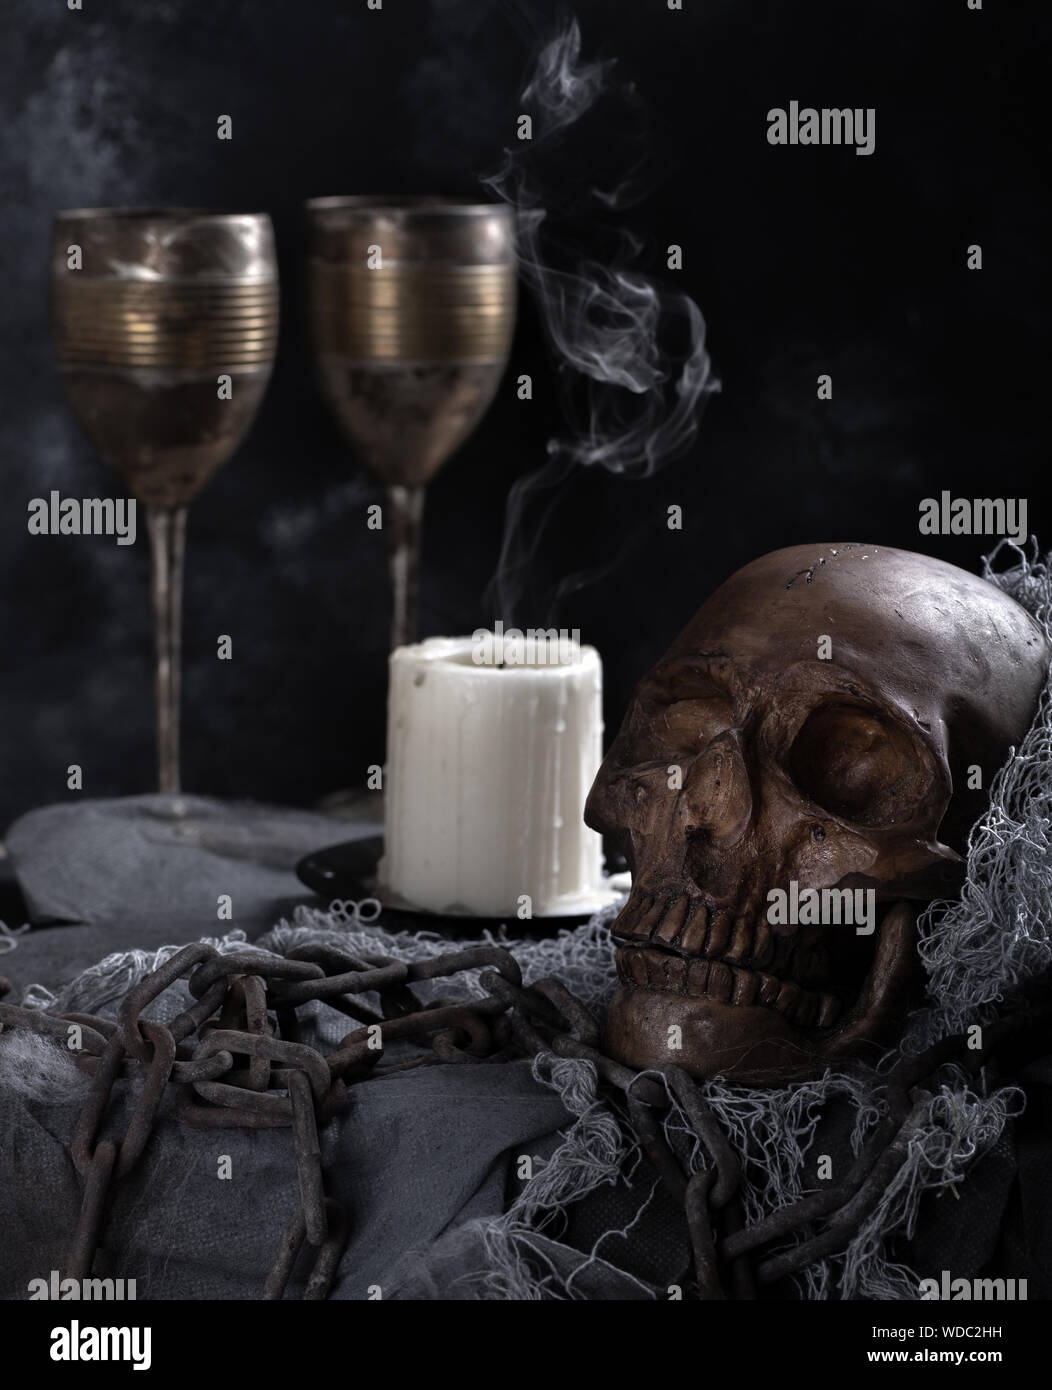 Crâne humain effrayant avec bougie couvant et gobelets vintage dans un fond sombre. Banque D'Images